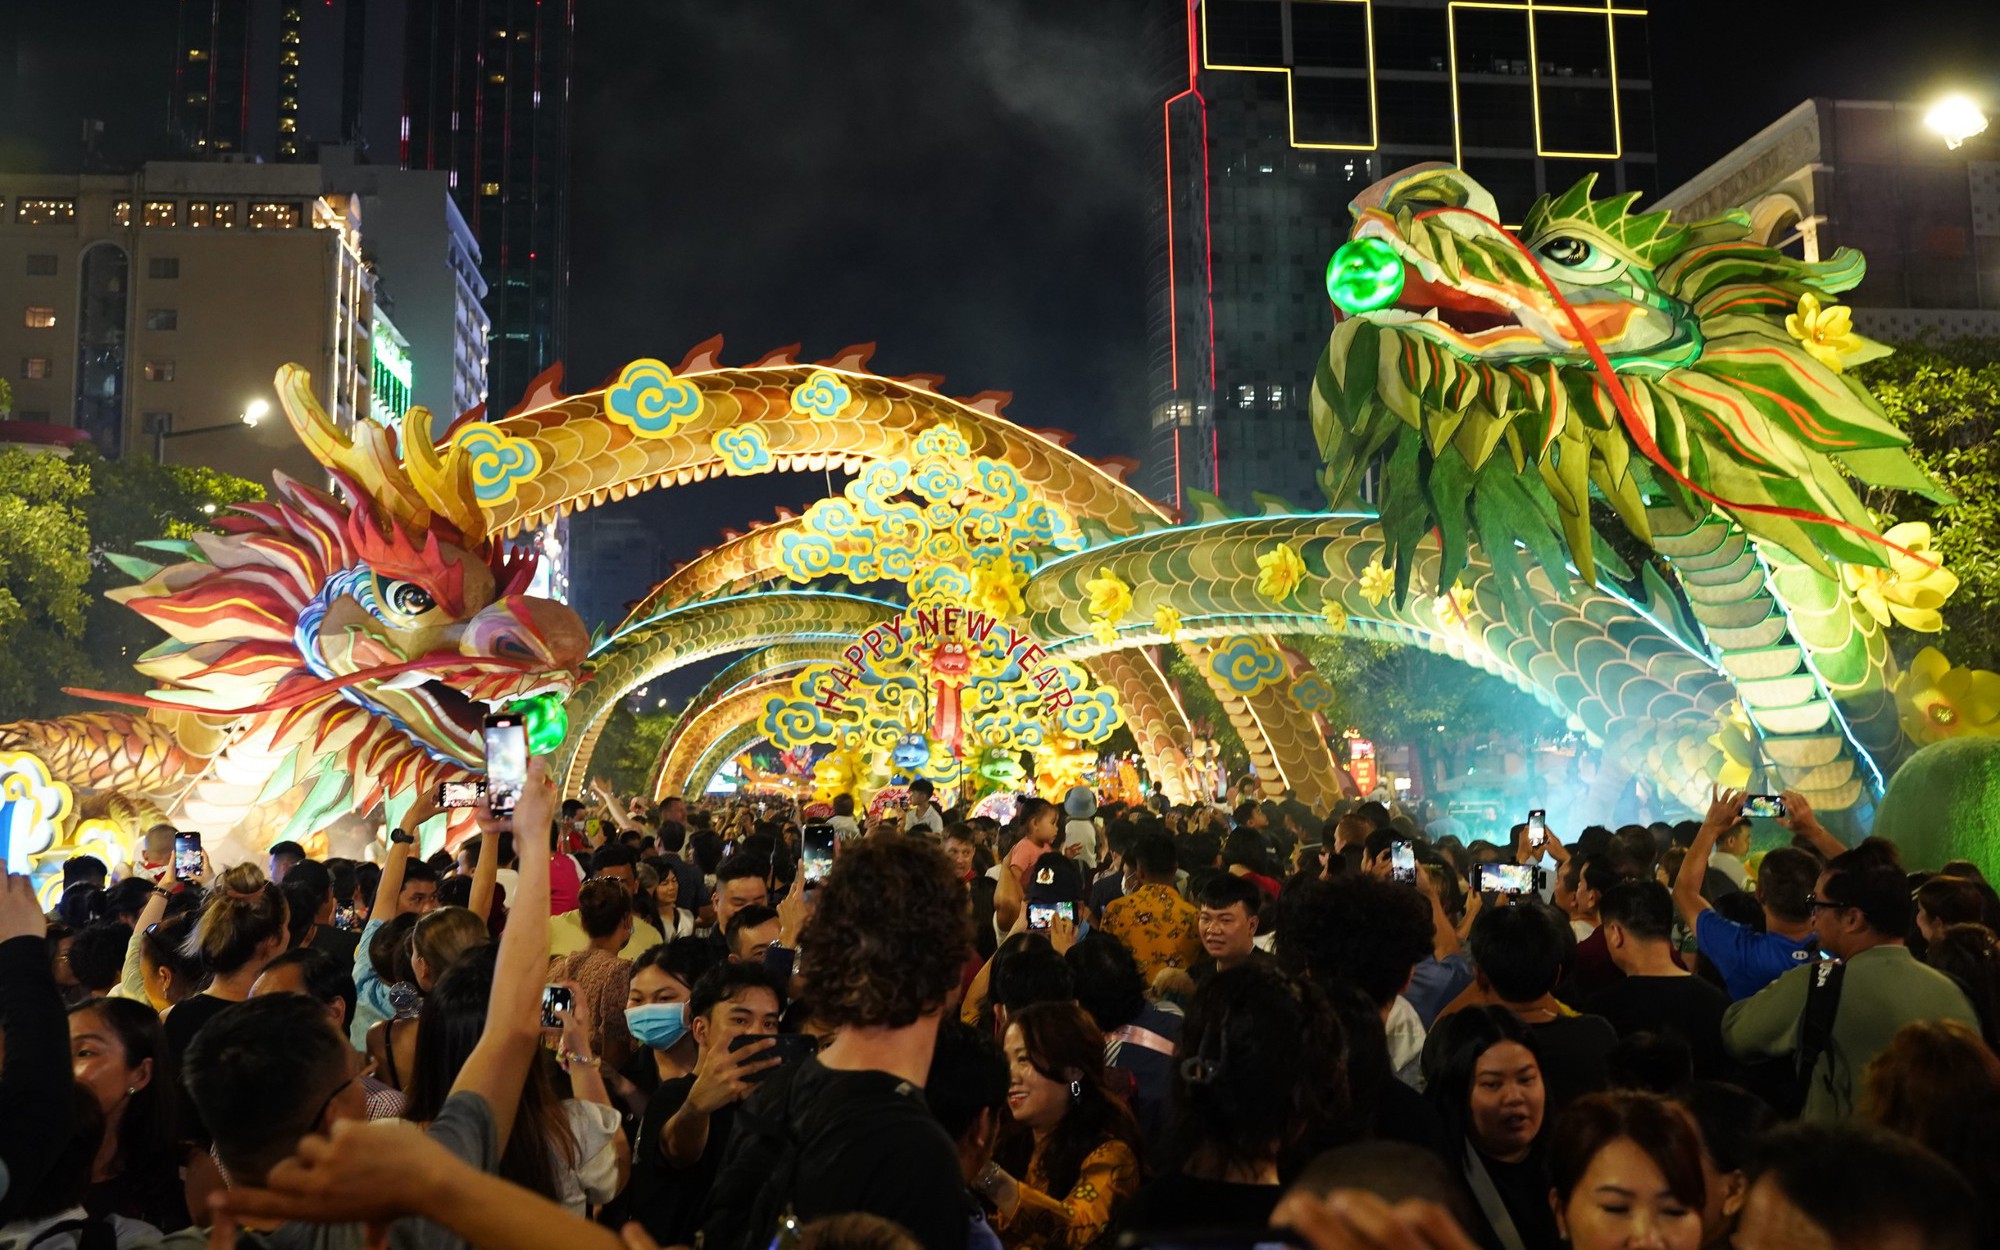 Linh vật rồng có thể "gầm gừ và chuyển động" ở Đường hoa Nguyễn Huệ thu hút hàng nghìn người tham quan